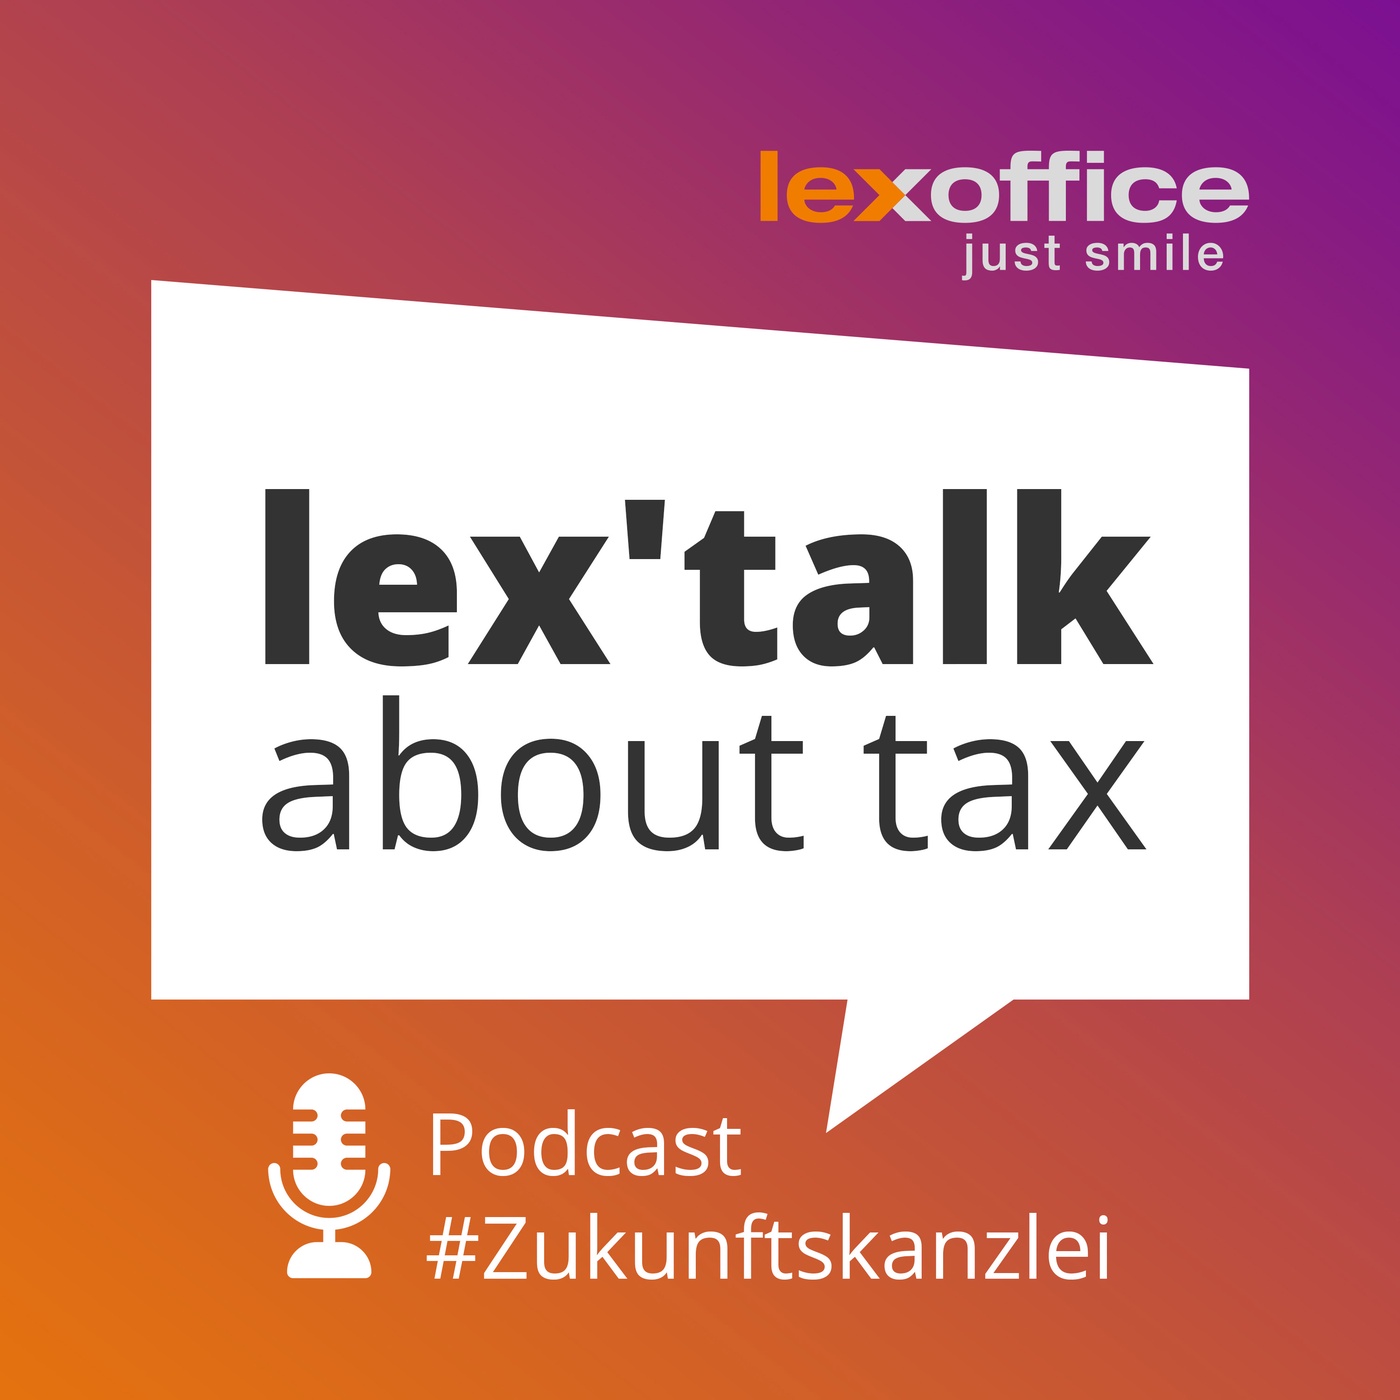 lex'talk about tax – Der lexoffice Podcast zur #Zukunftskanzlei